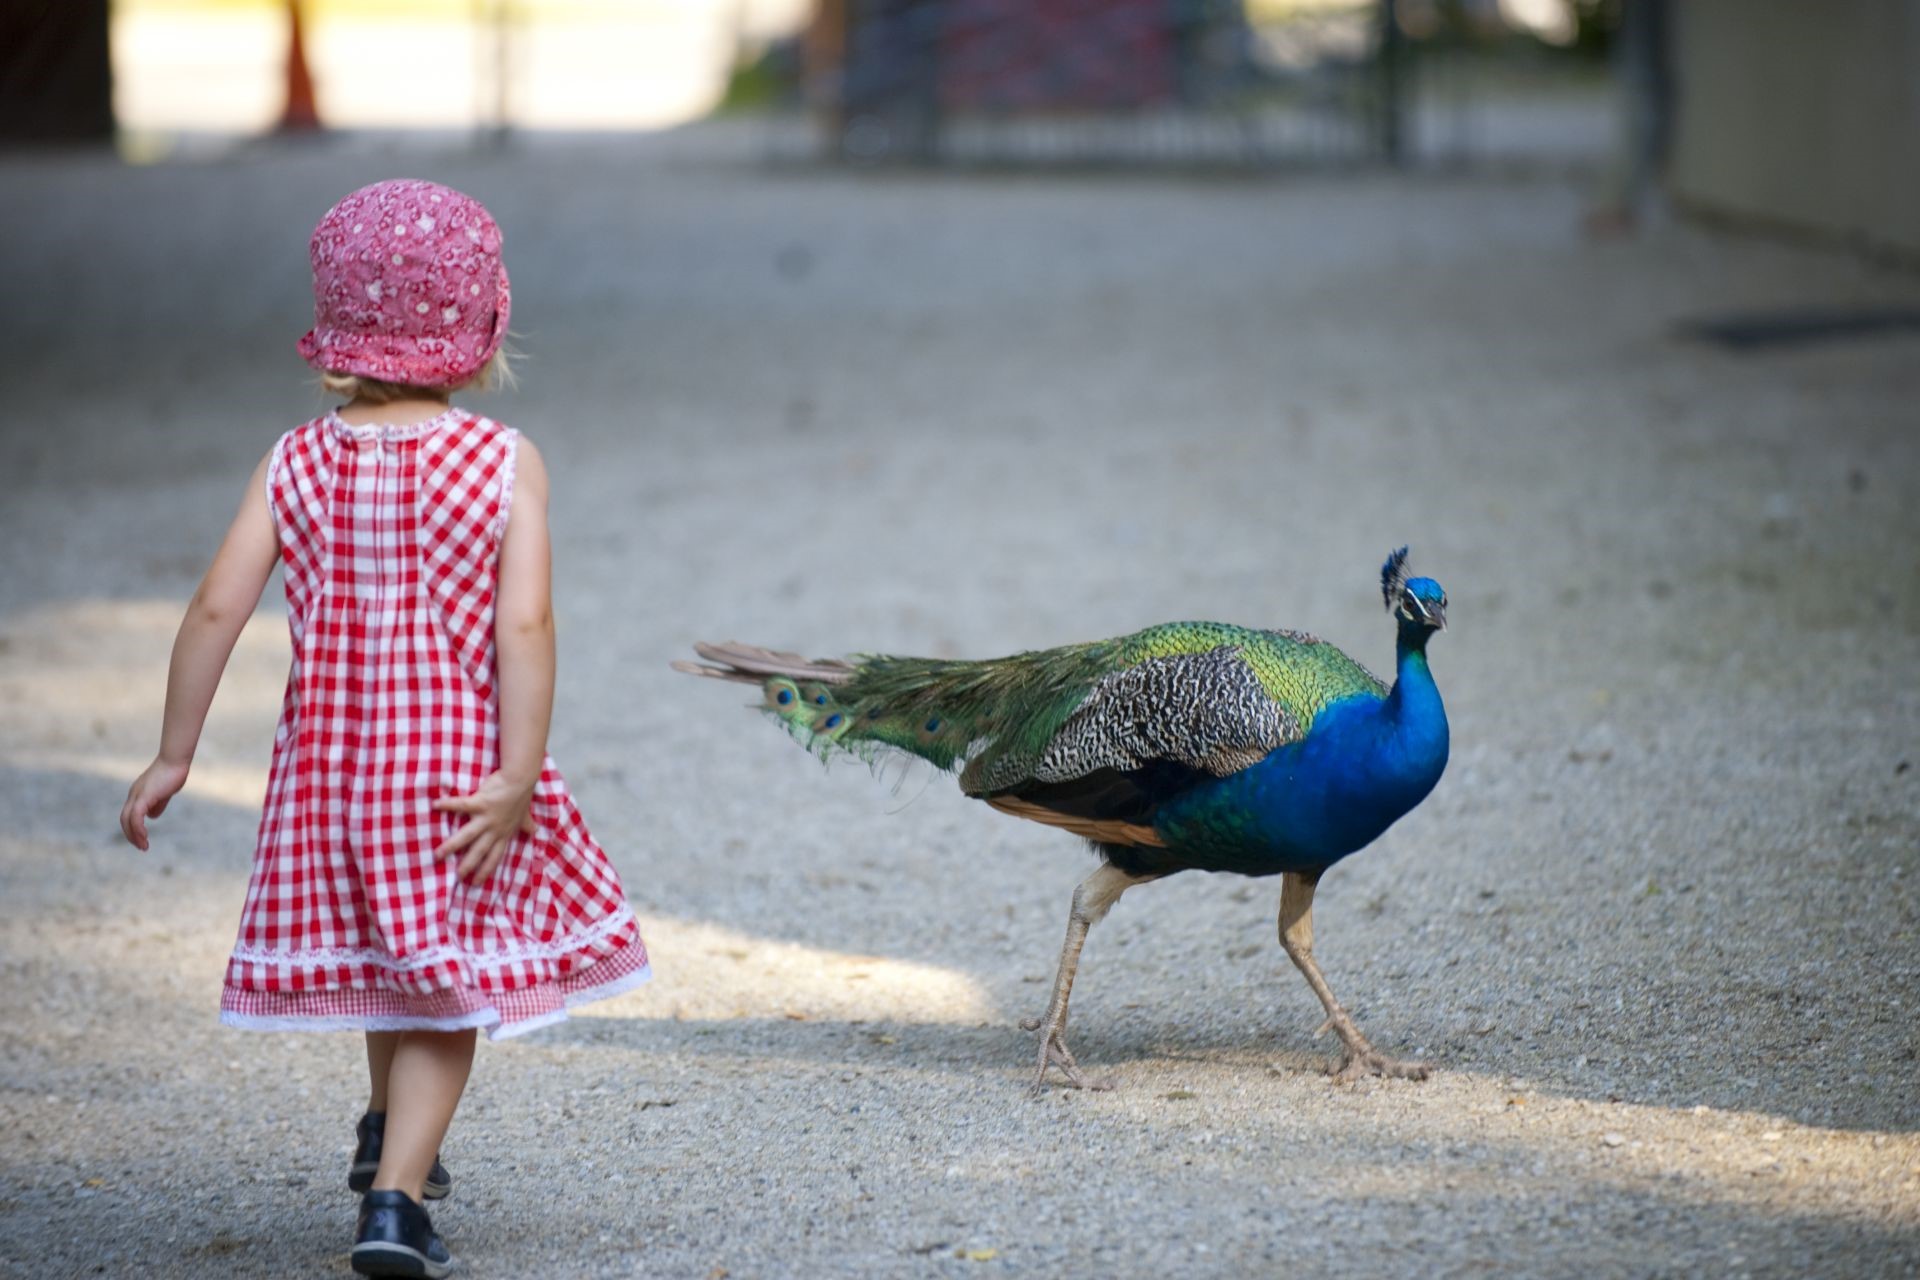 Ein kleines Mädchen in einem pinken Kleid läuft auf einen blau-grün schimmernden Pfau zu.